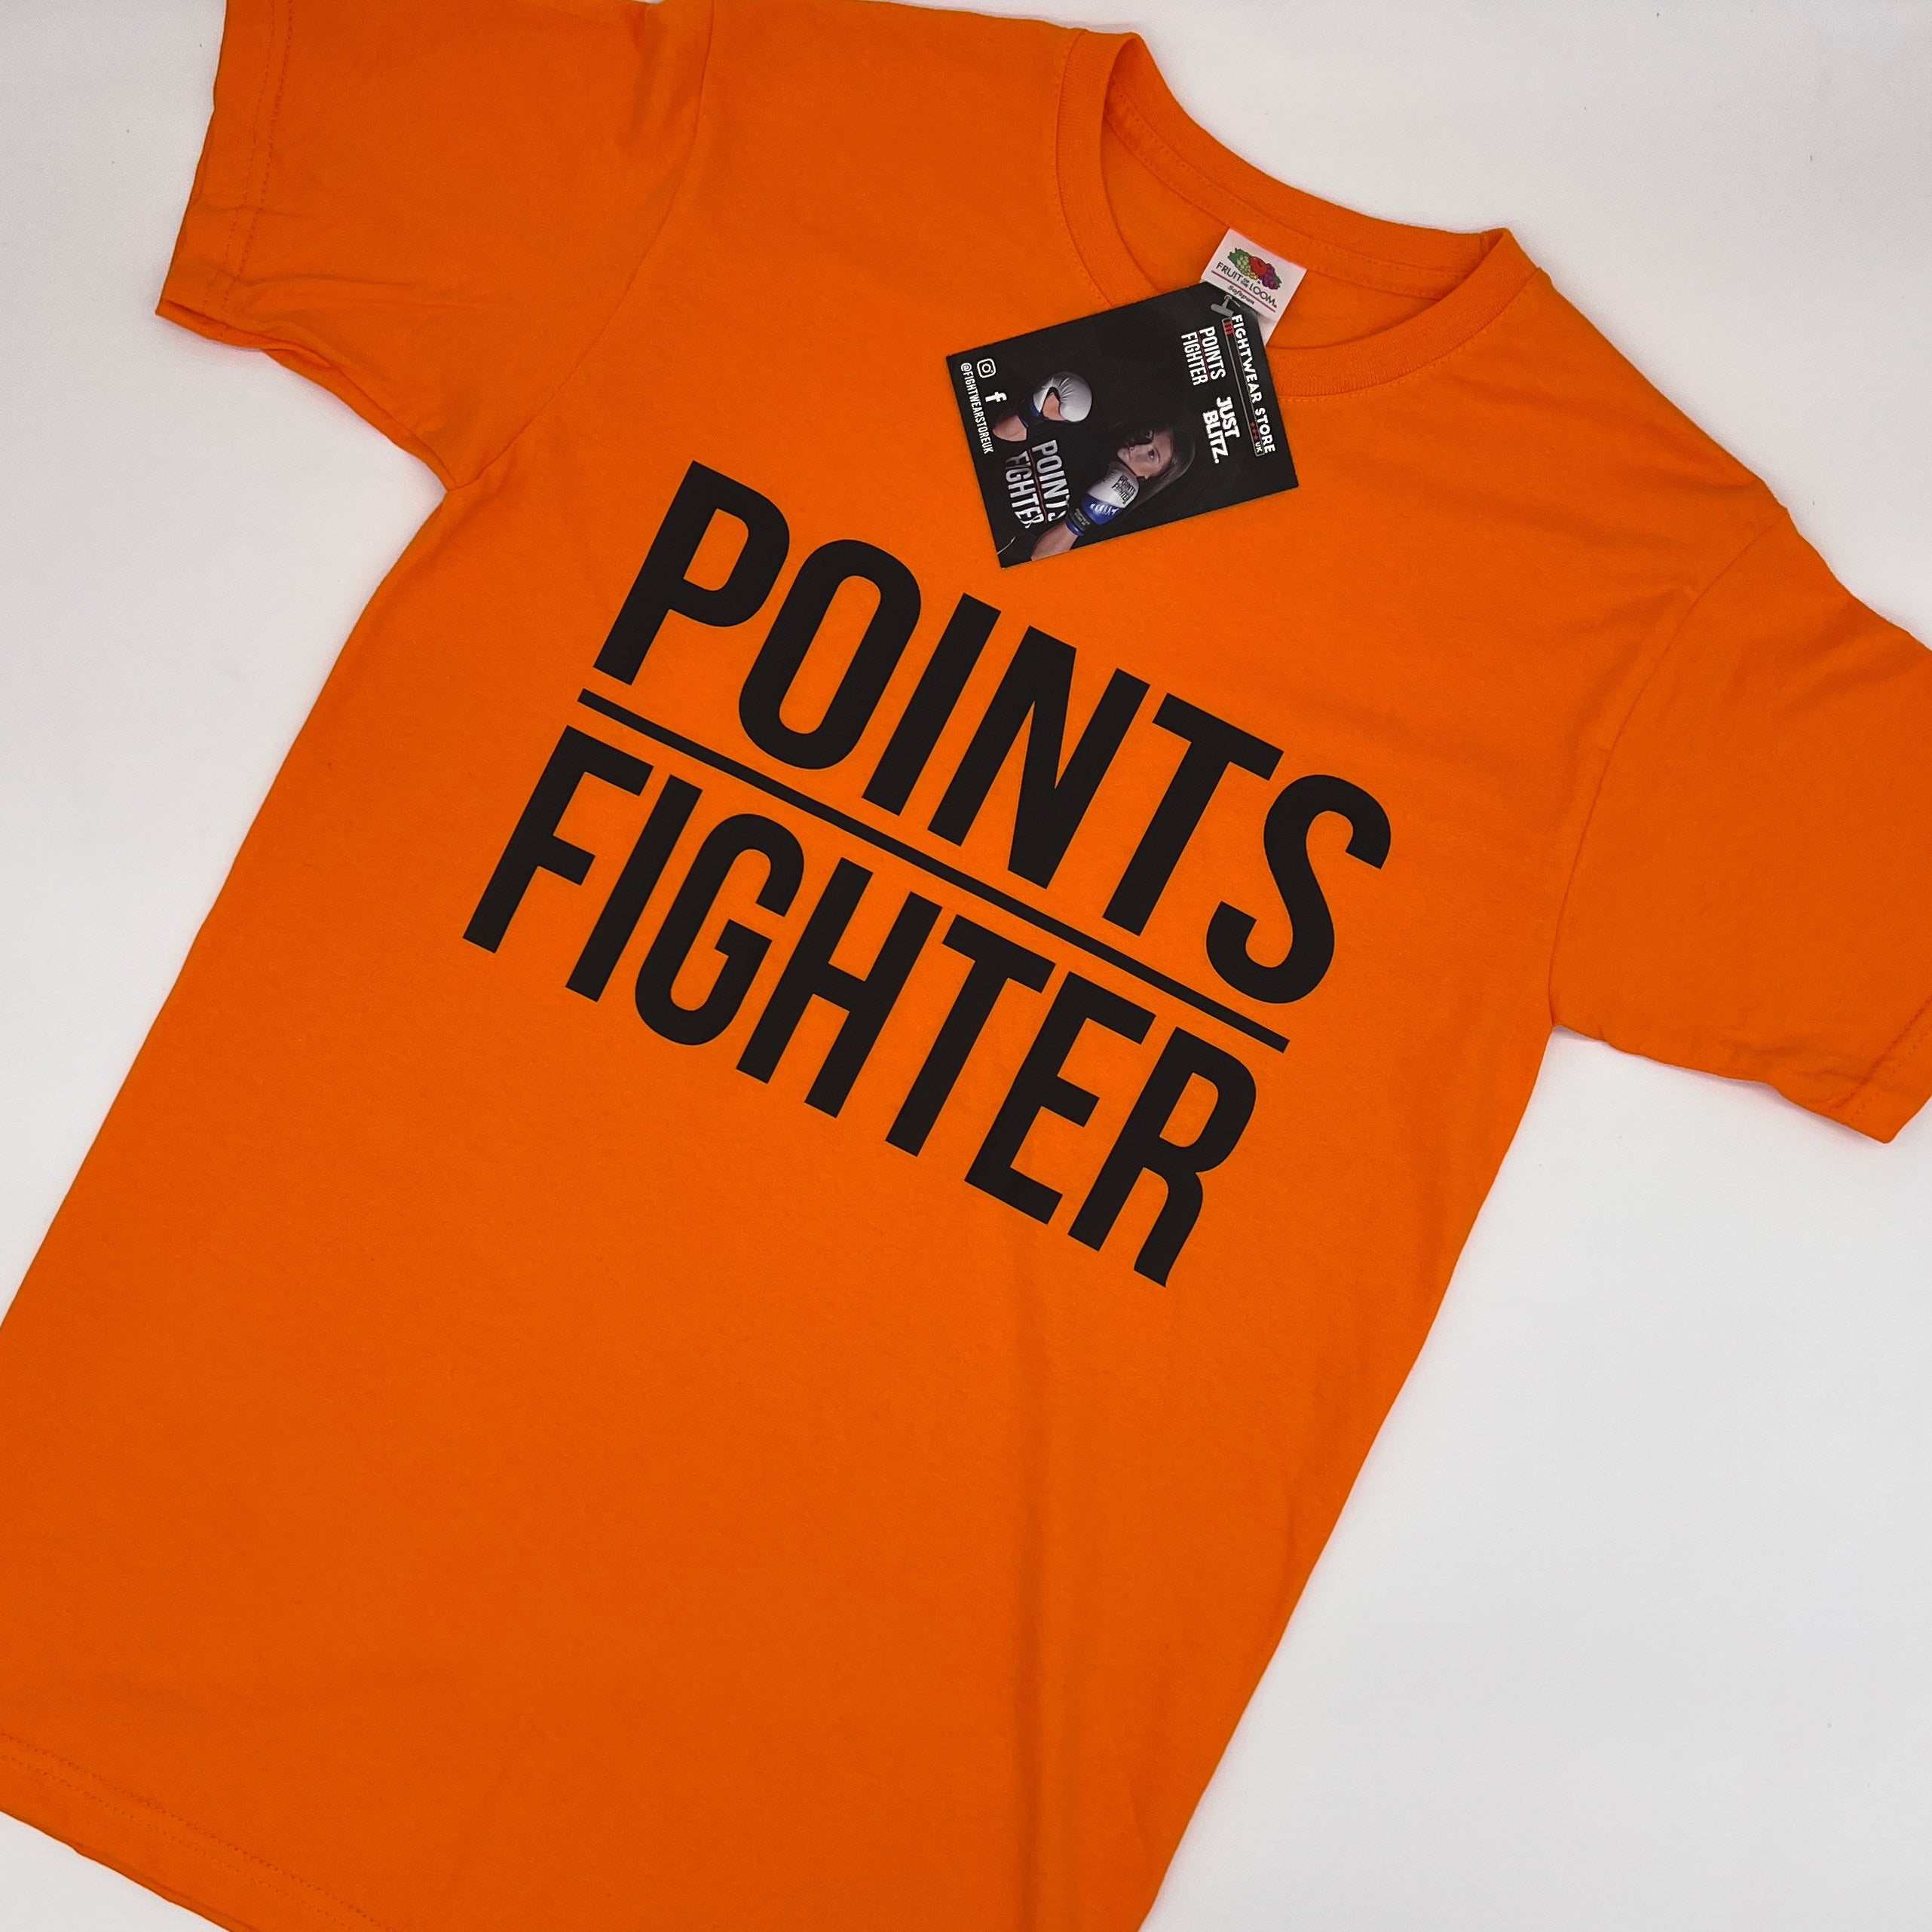 Points Fighter T-Shirt - Orange